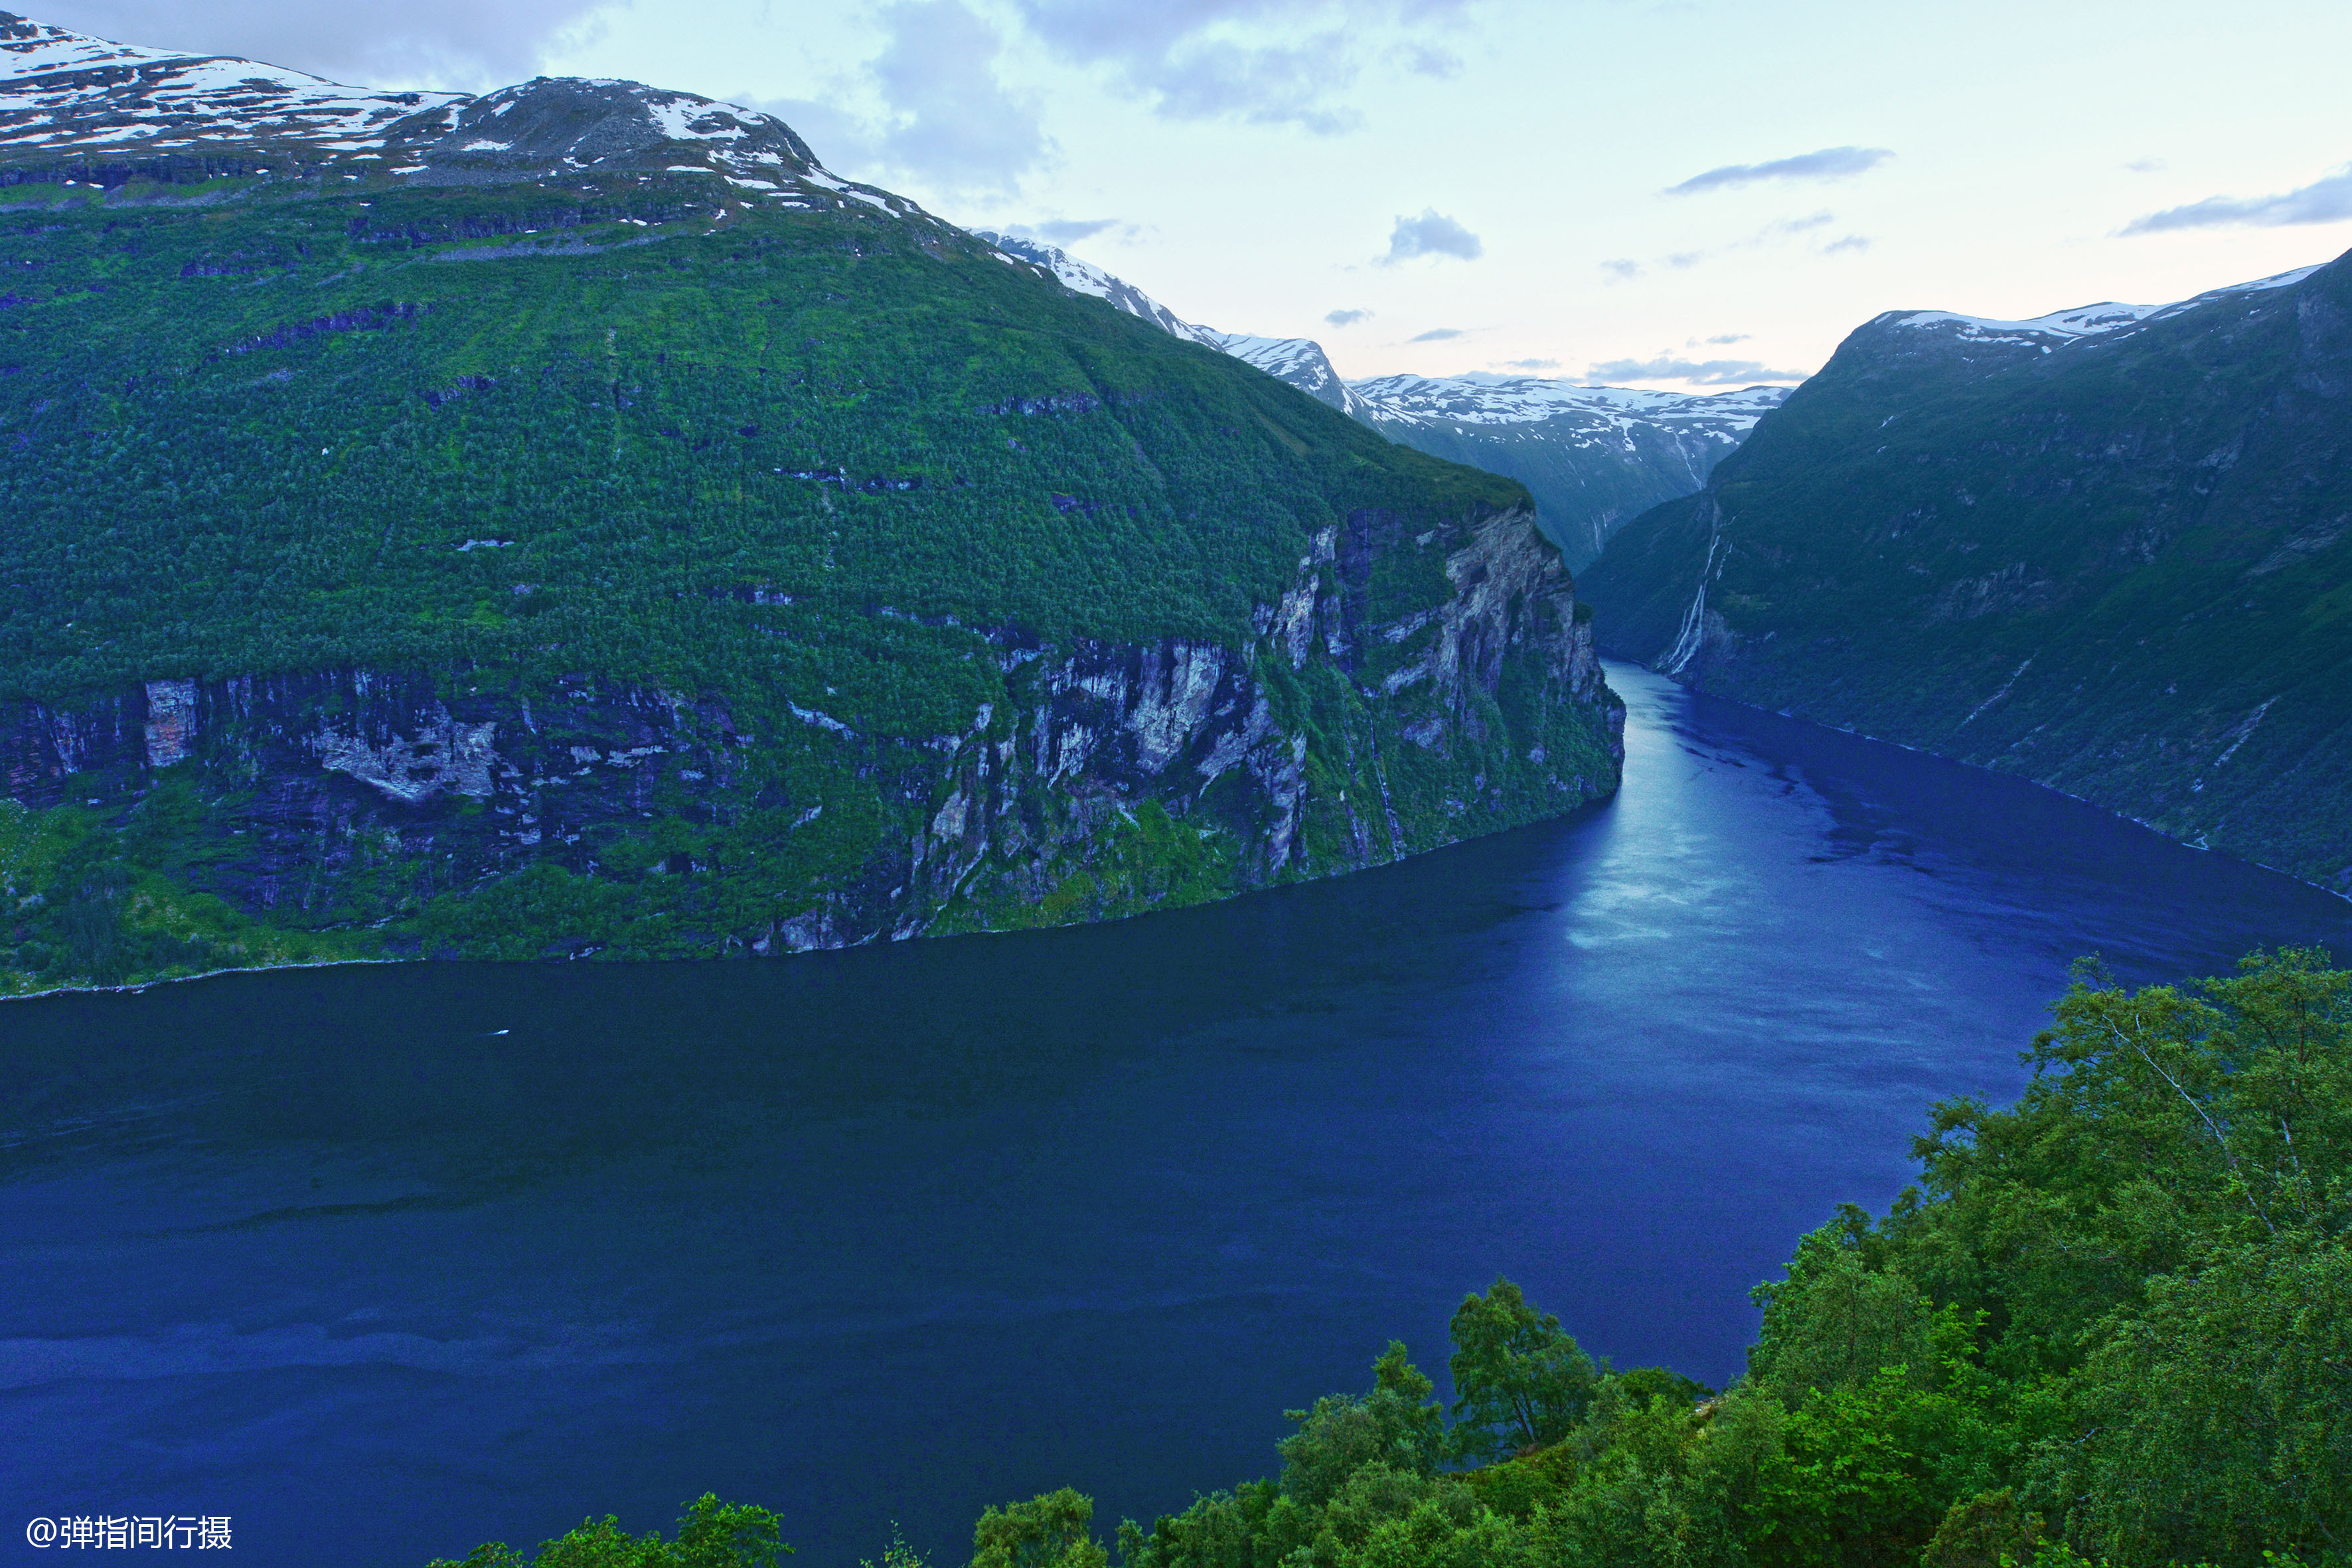 挪威最壮美的峡湾,随手拍就是风光大片,号称峡湾之王